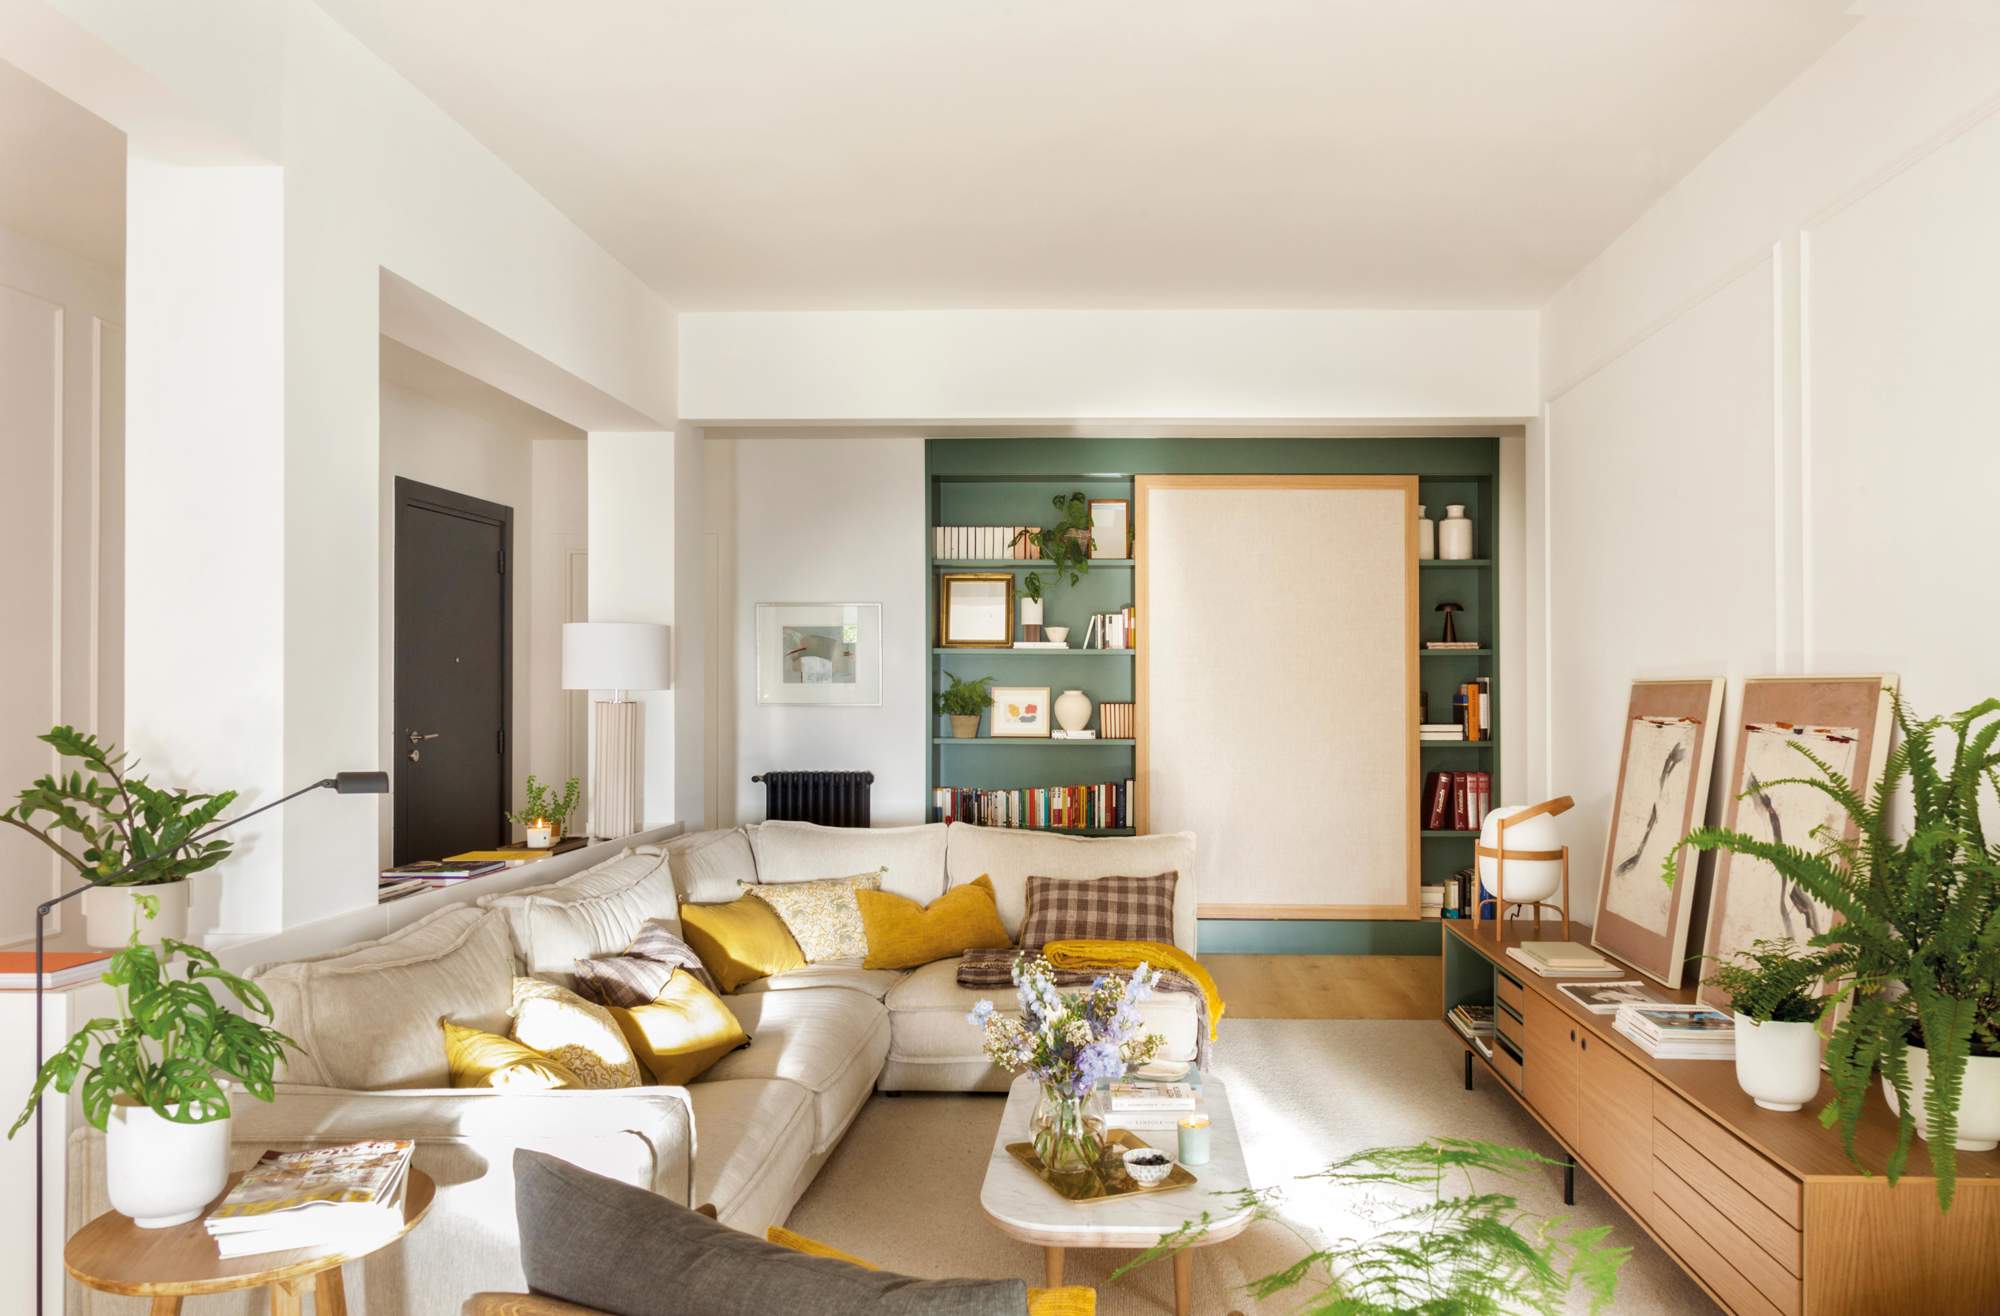 Salón con sofá esquinero, estantería pintada de verde, mueble bajo, cuadros y plantas.